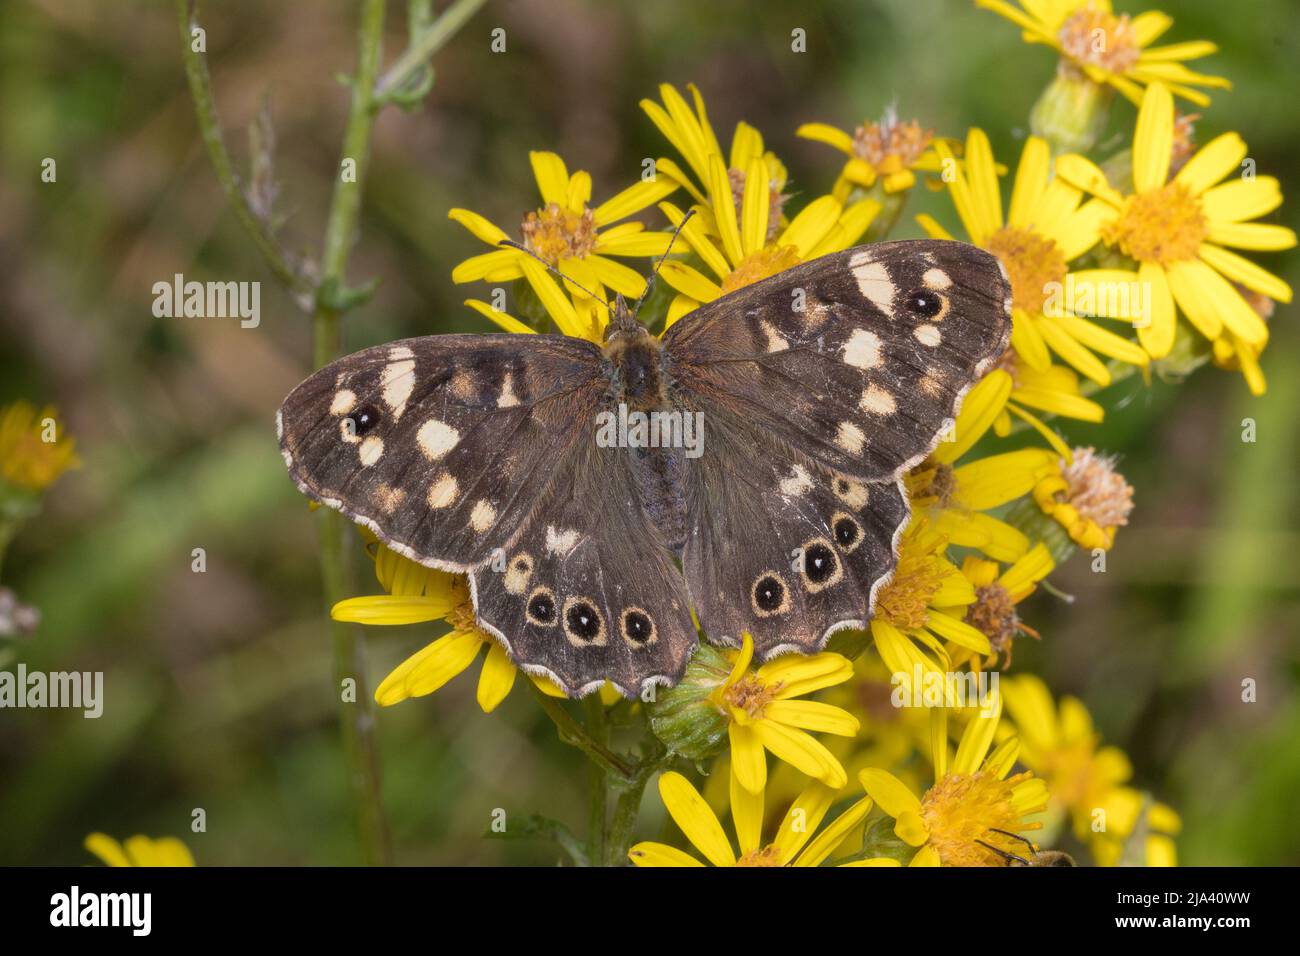 Primo piano di una farfalla di legno macchiata (Pararge aegeria) a riposo su fiori. Preso alla riserva naturale di Joe's Pond, Rainton, Tyne & Wear, Regno Unito. Foto Stock